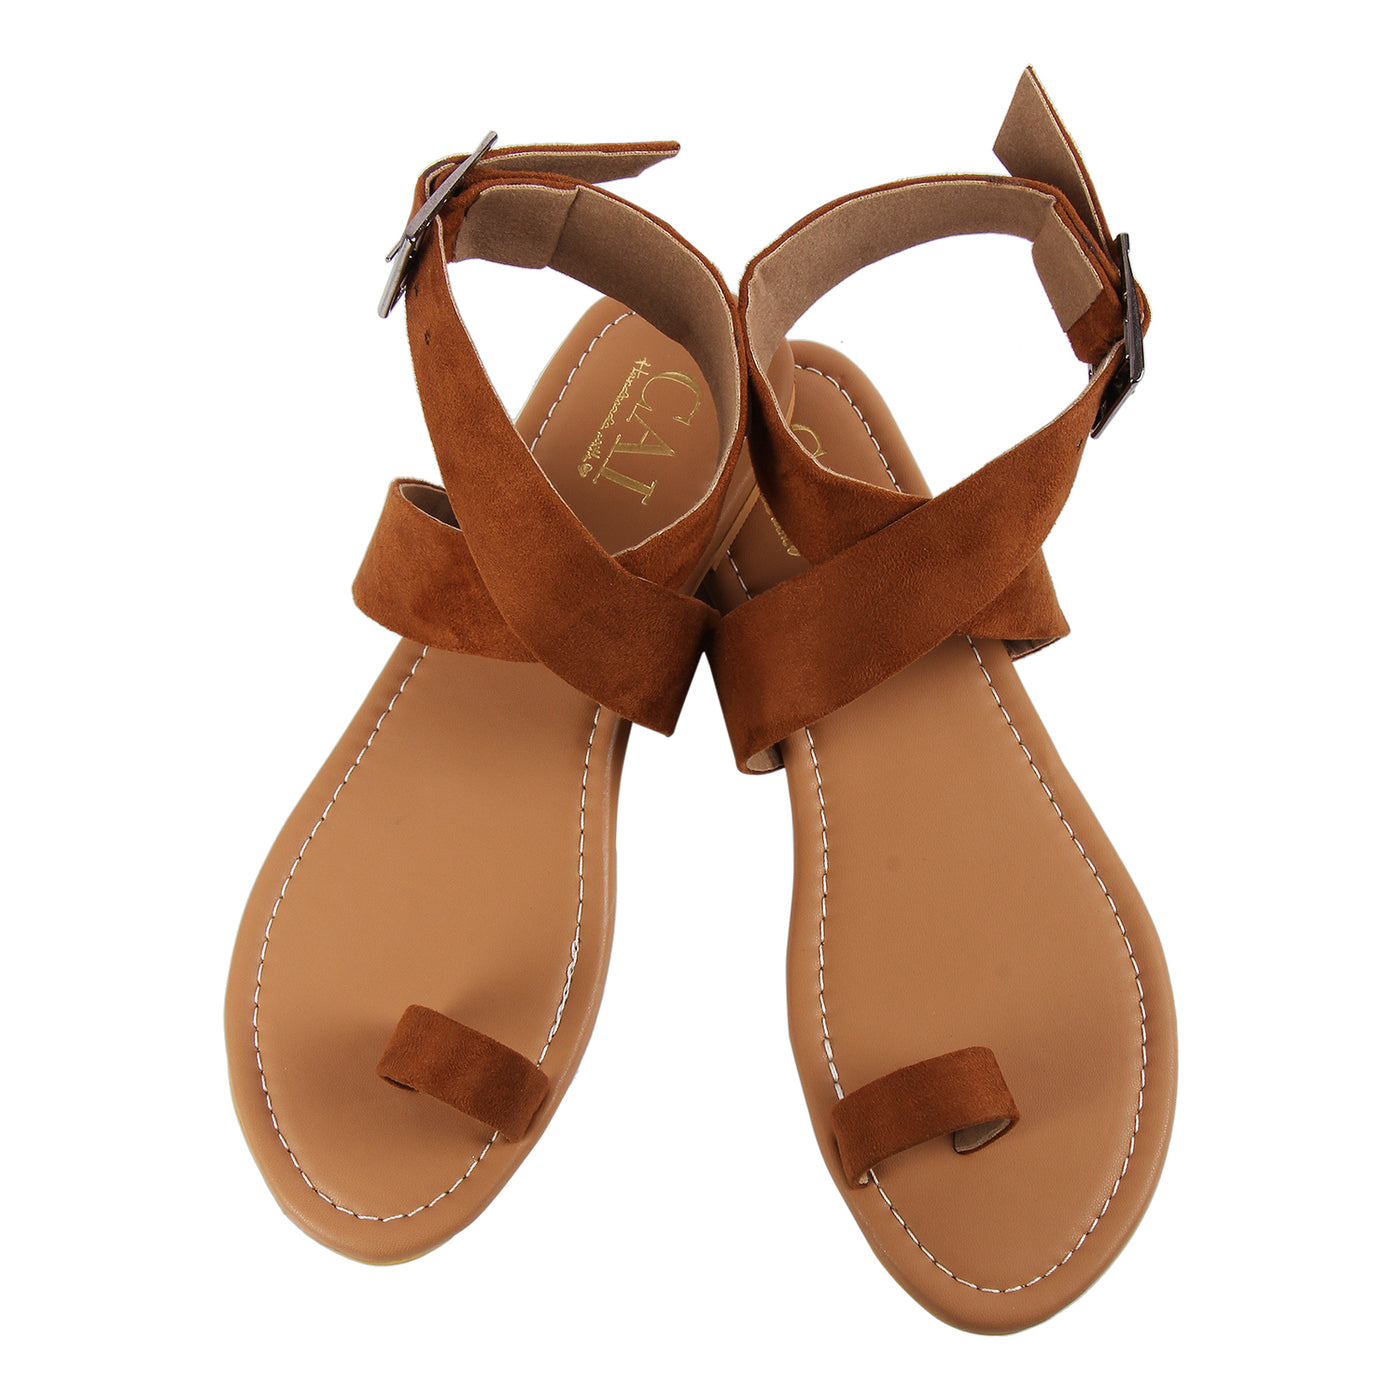 Deveteriel Women's Brown Flat Sandals | Aldo Shoes